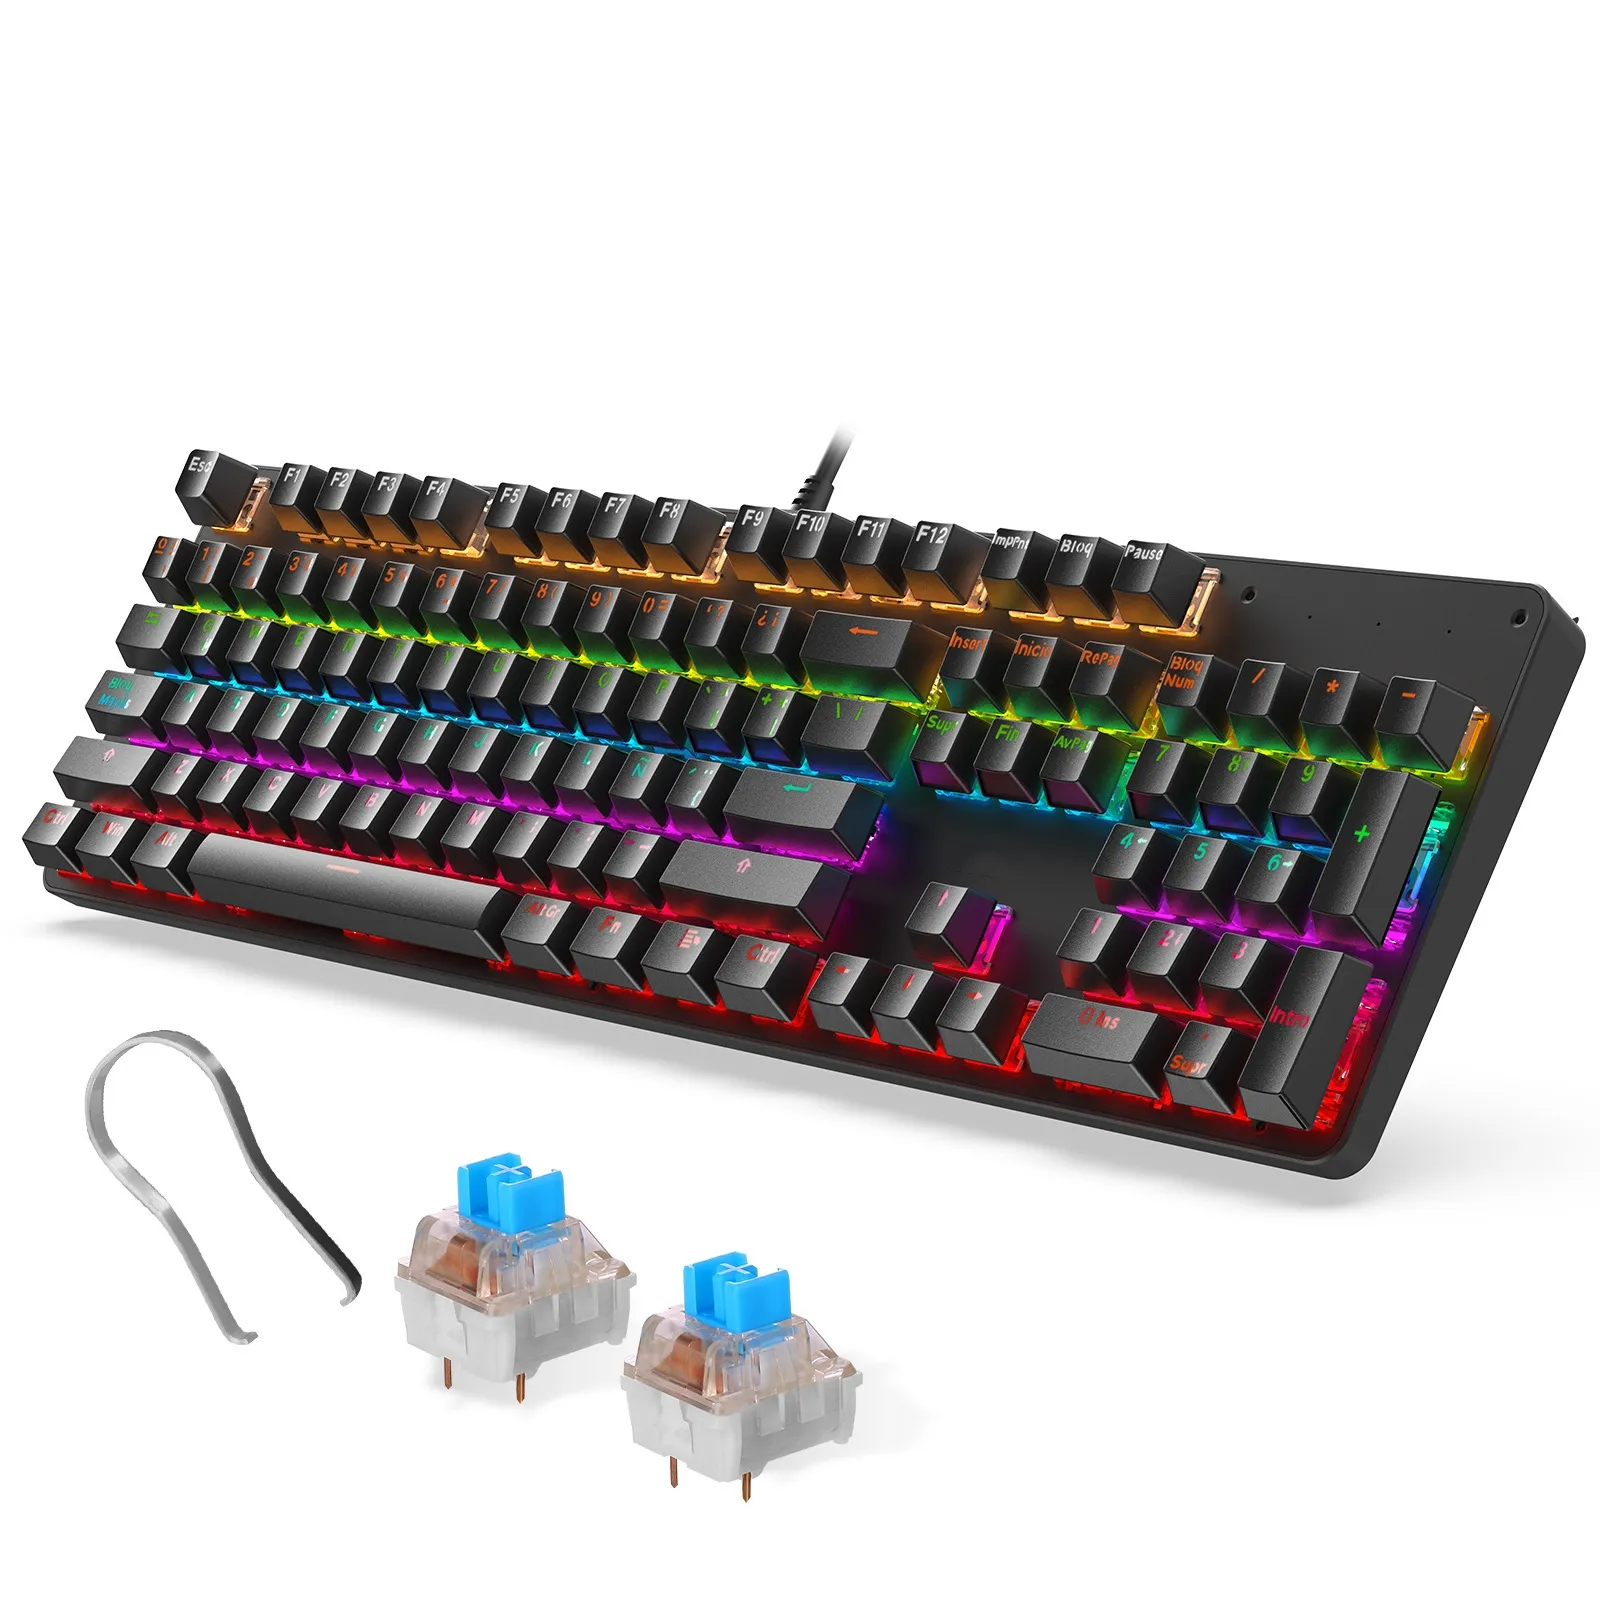 Hochwertige 104 Tasten mechanische Tastatur mit LED-USB-Schnittstelle für Computergebrauch New Style Tastatur